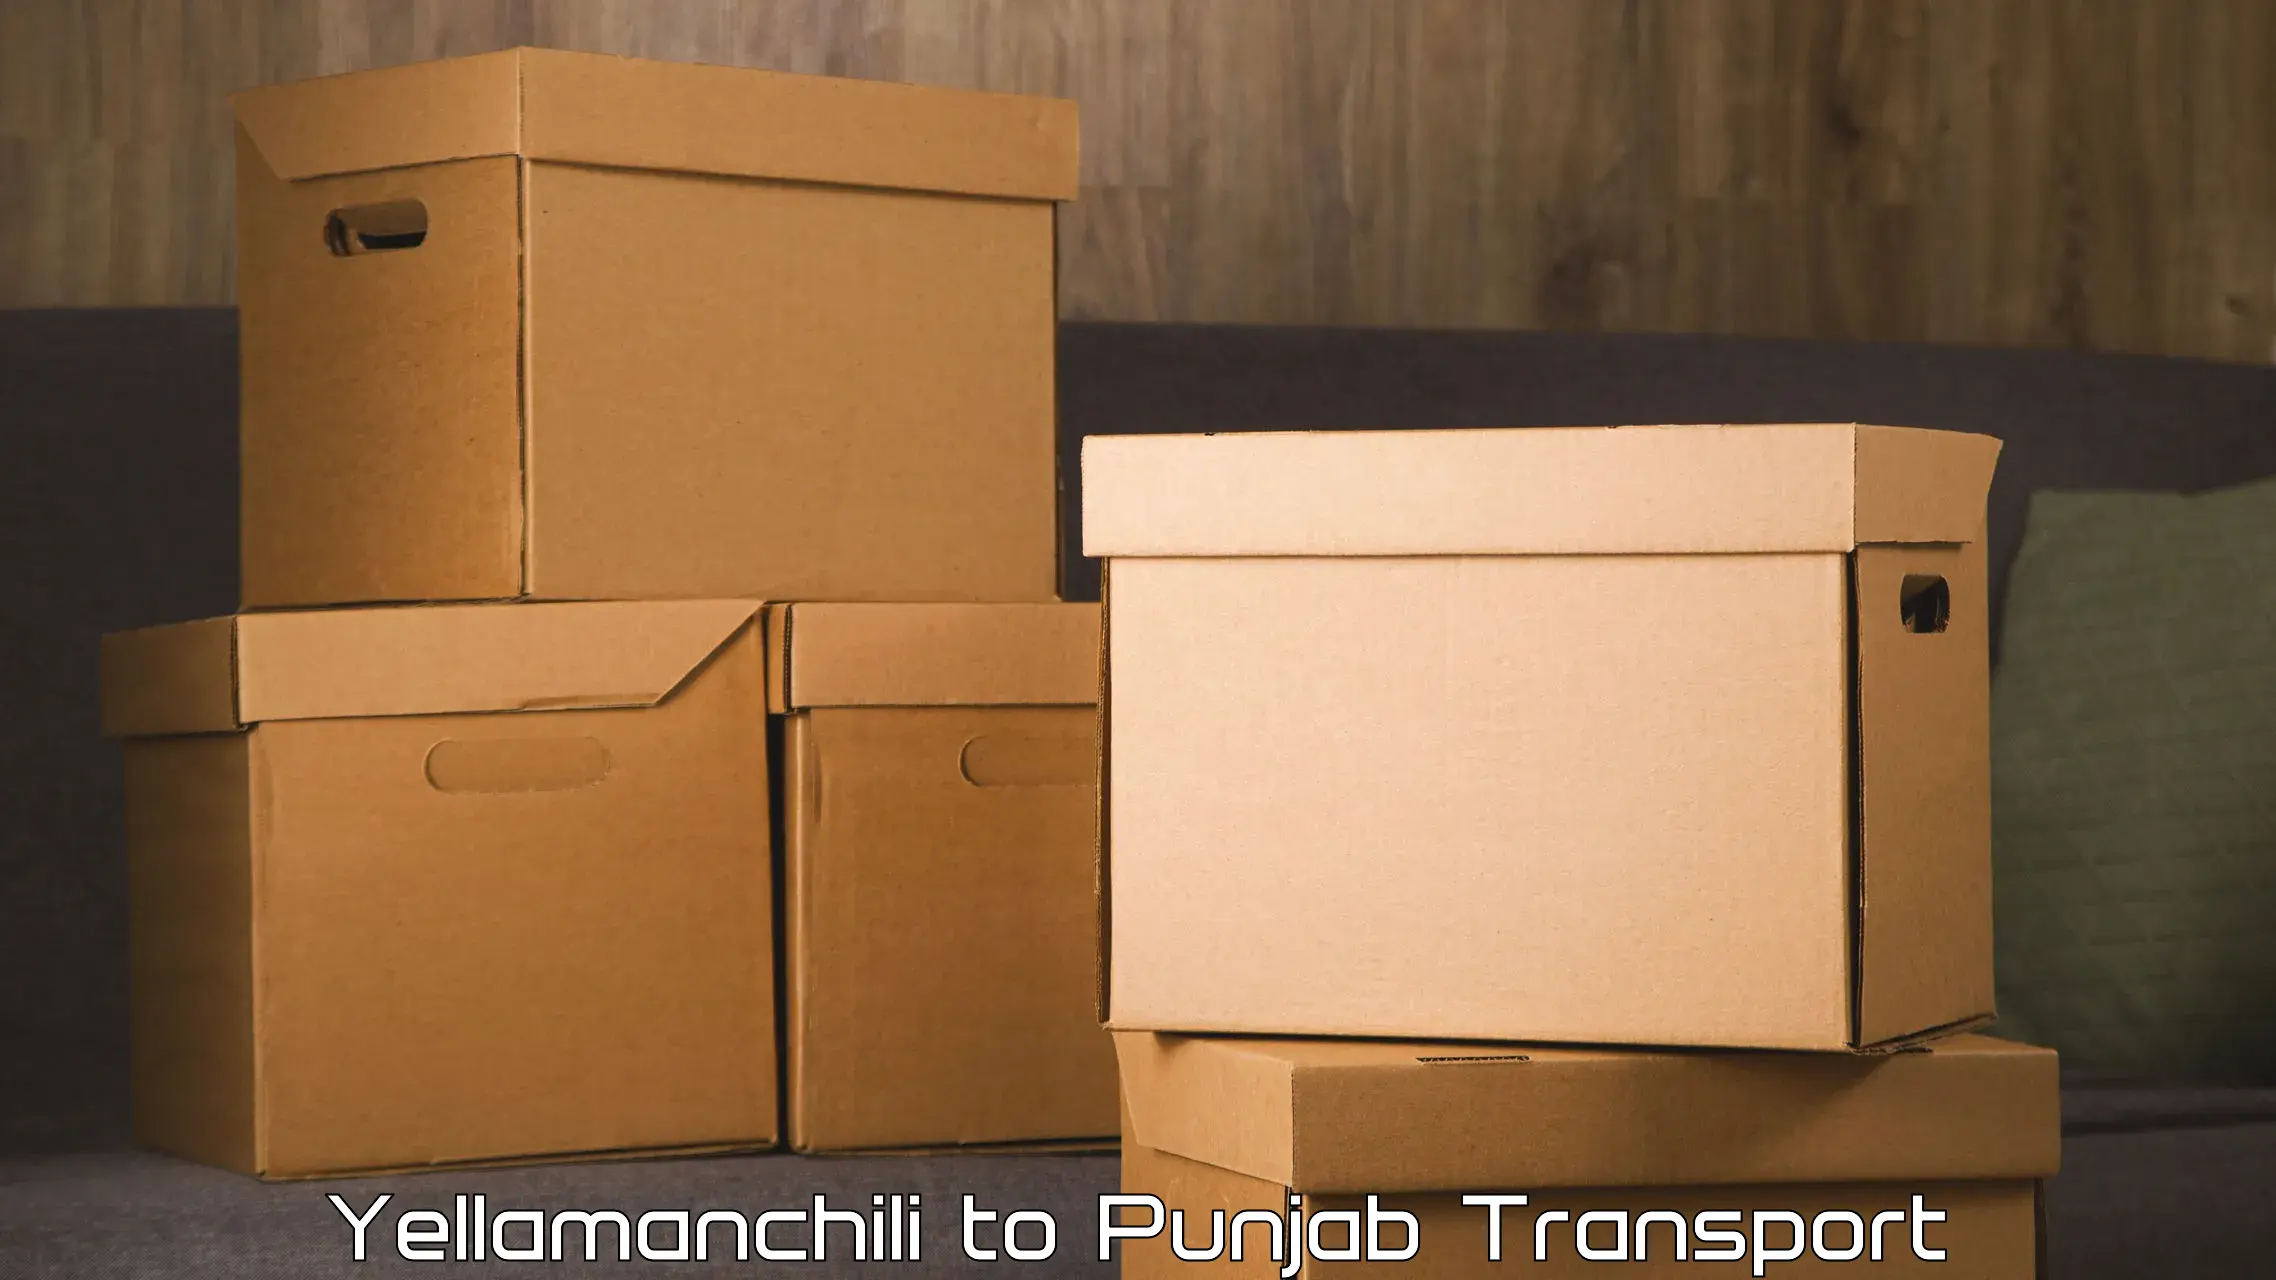 Nationwide transport services Yellamanchili to Punjab